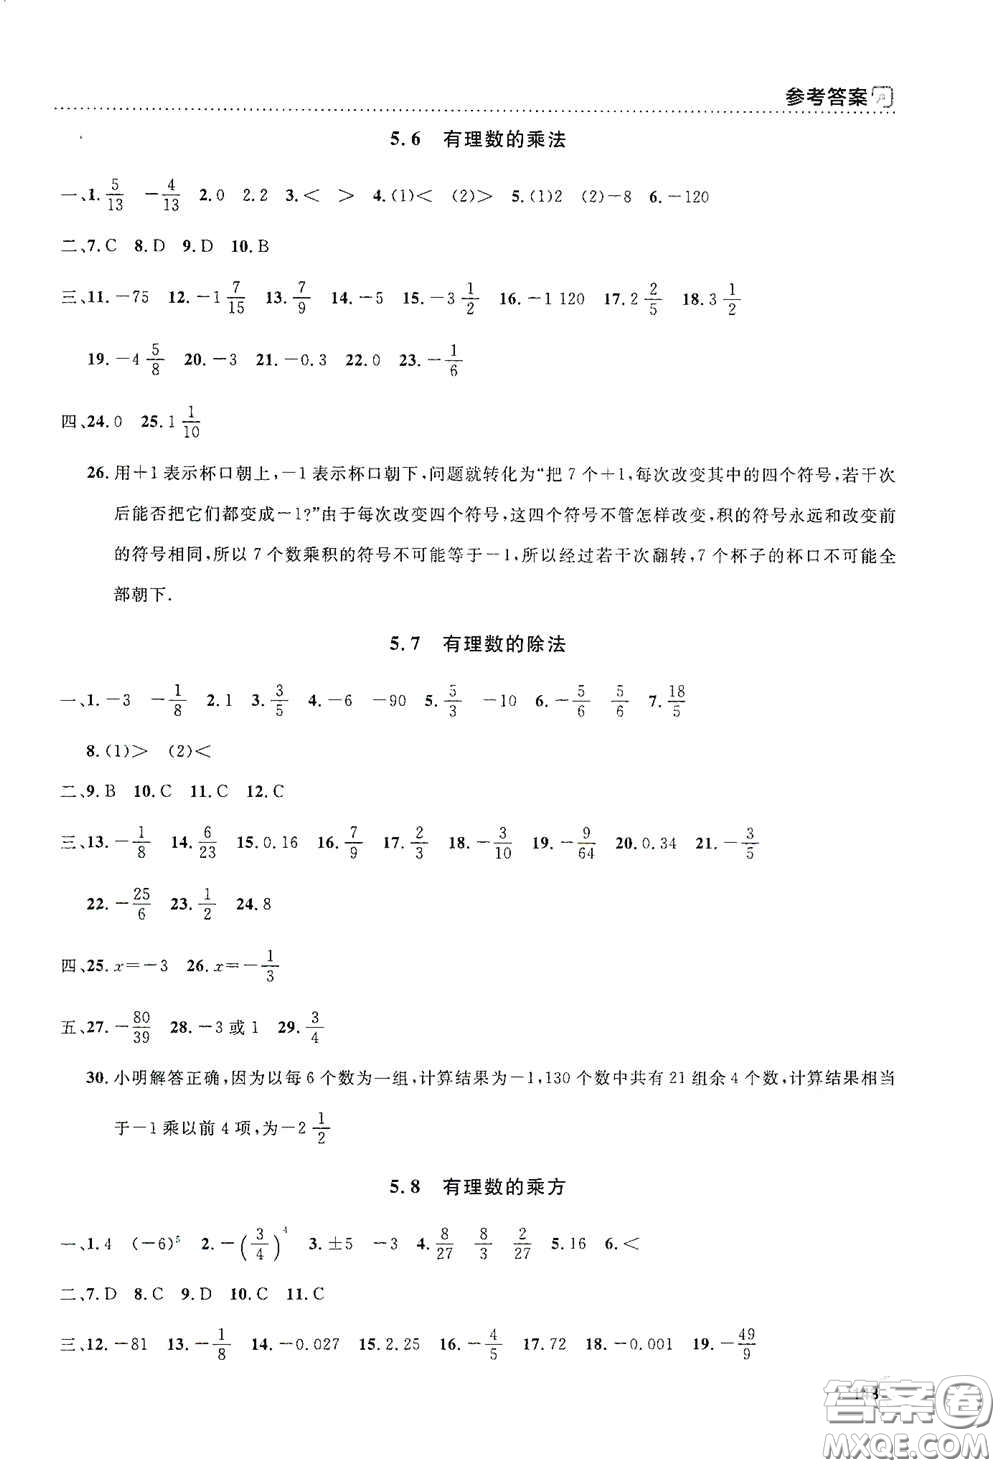 上海大学出版社2021钟书金牌上海作业六年级数学下册全新修订版答案